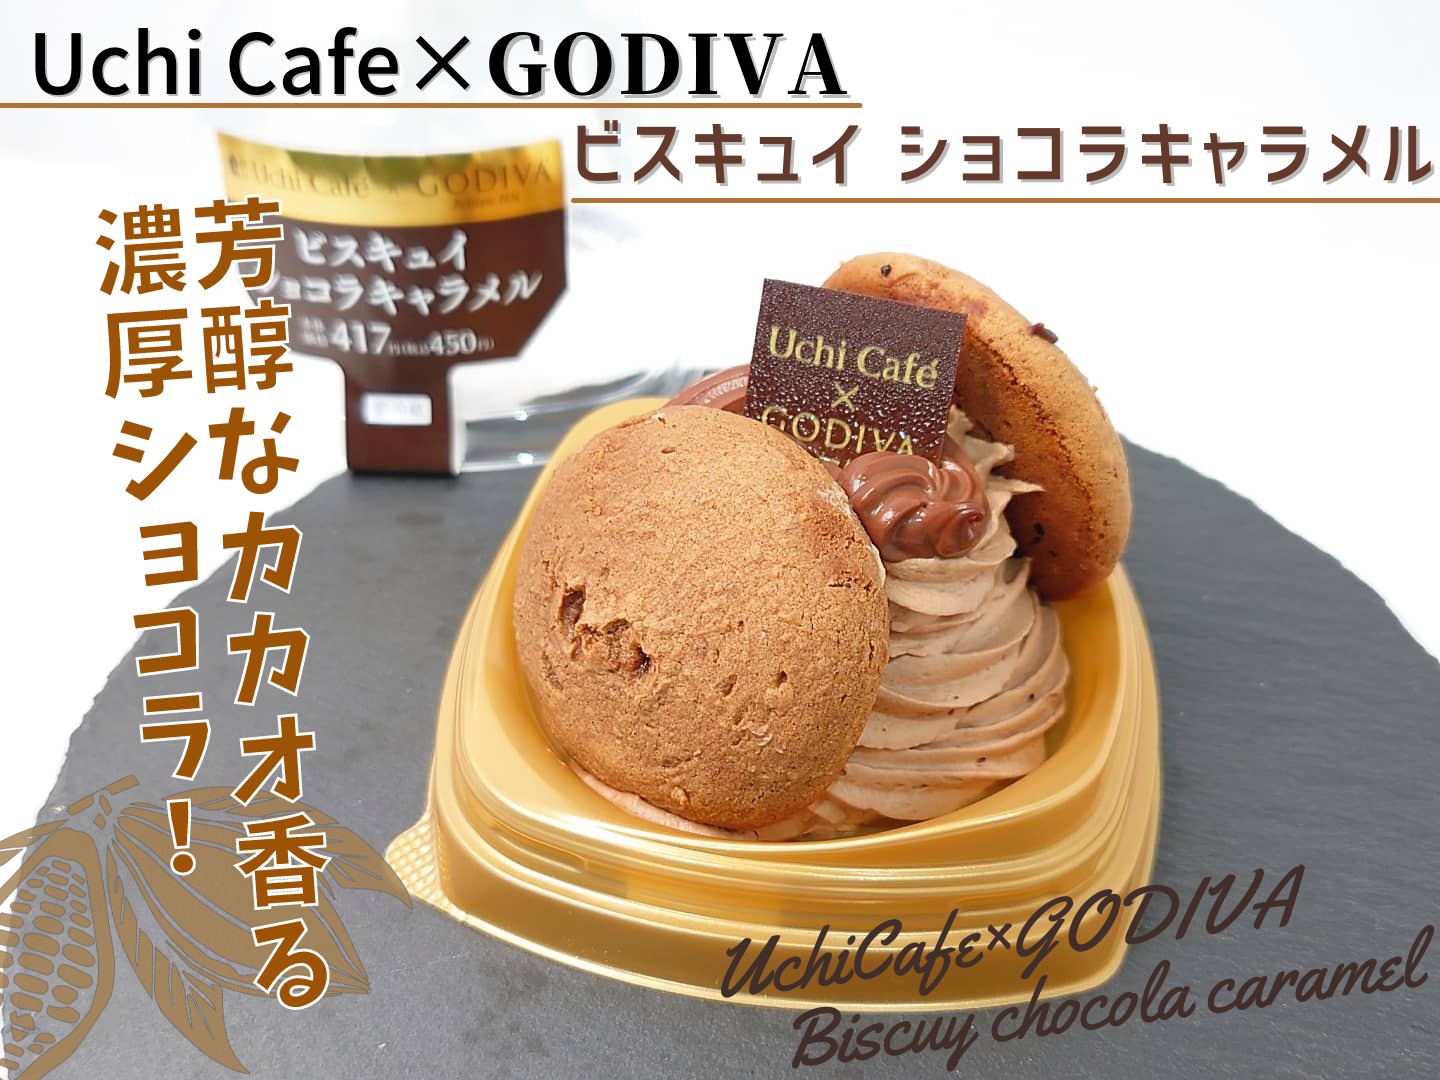 Uchi Café×GODIVA ビスキュイ ショコラキャラメル